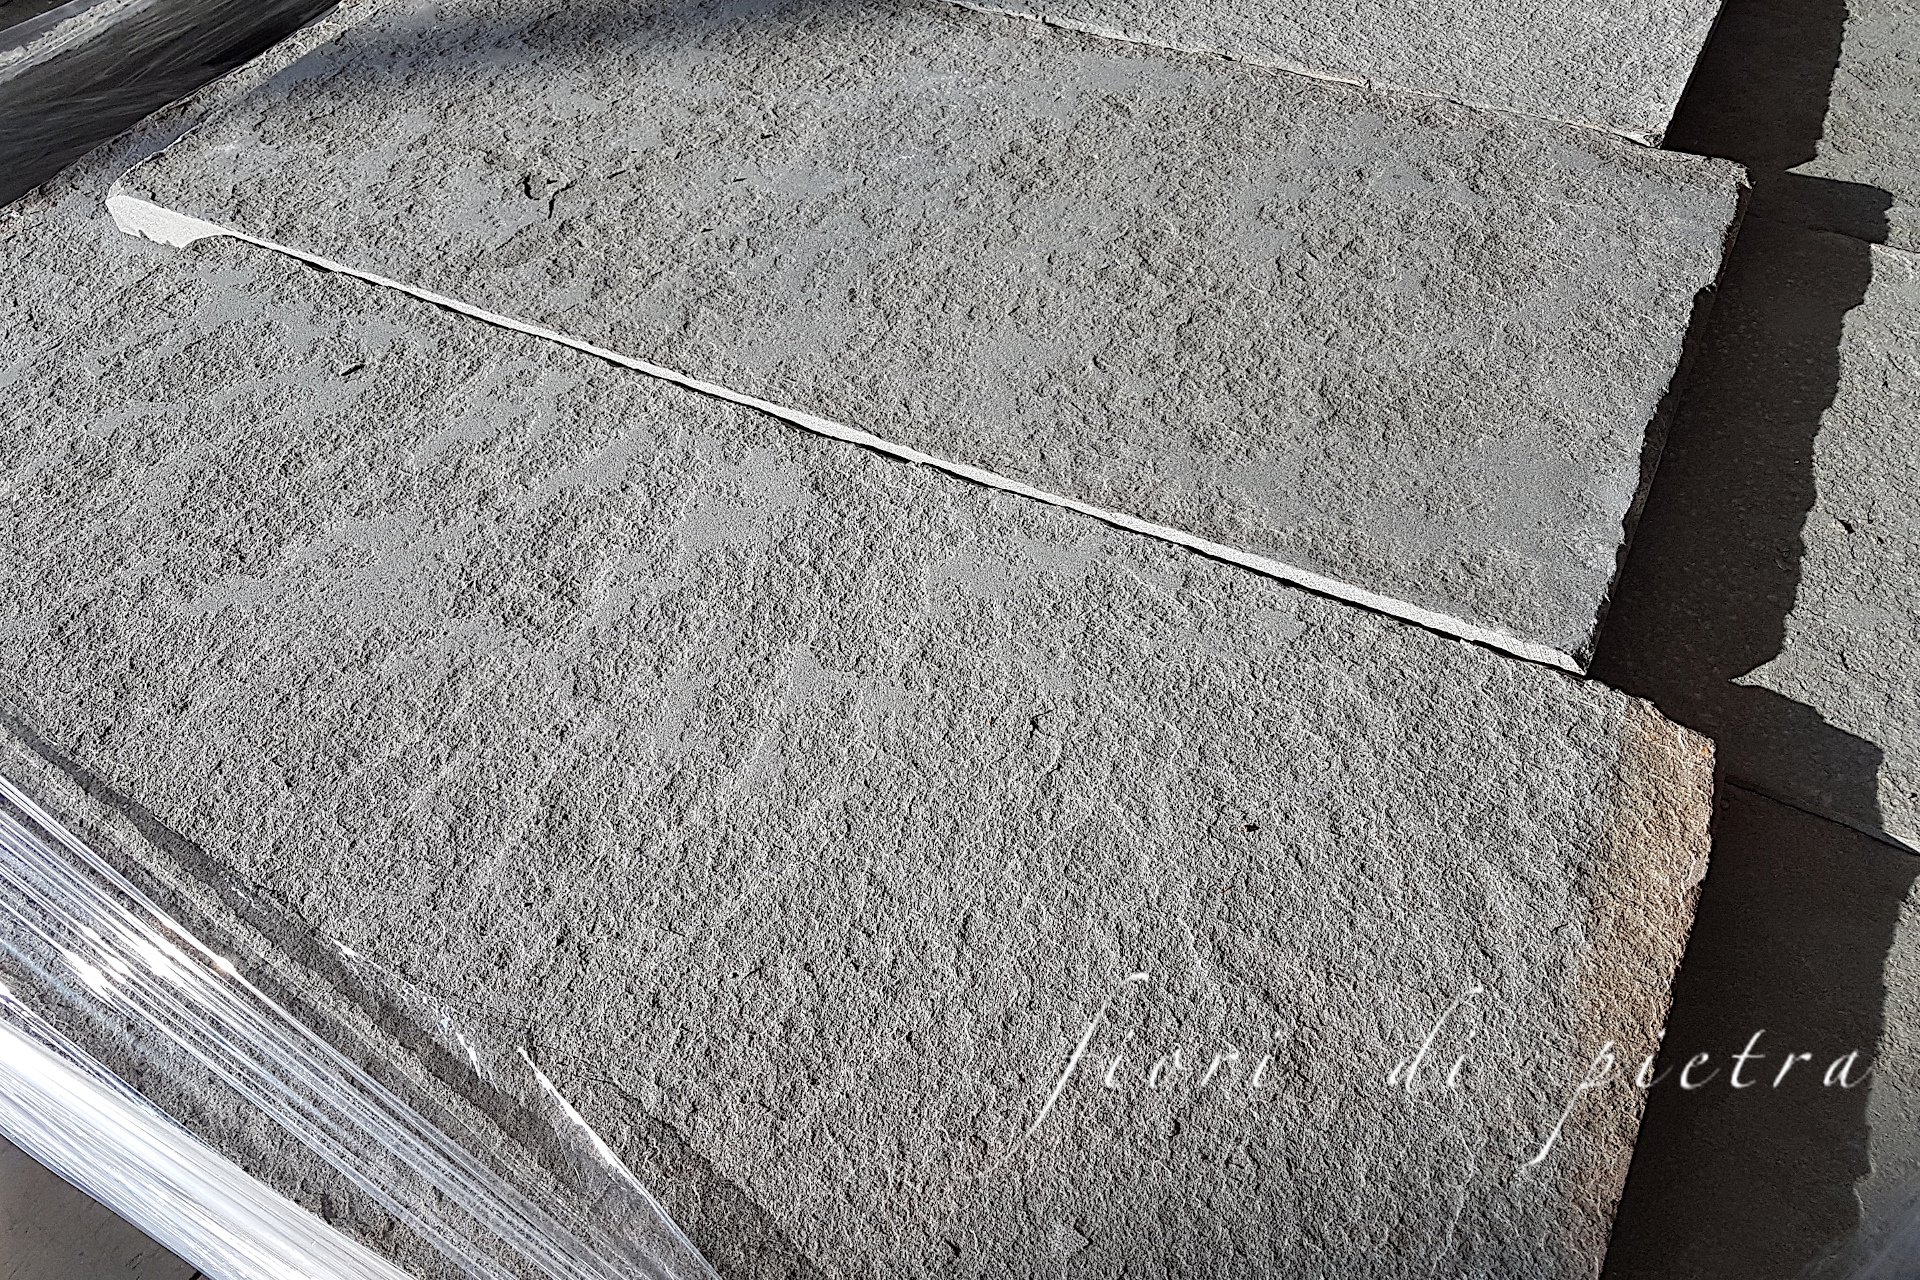 Realizzazione Pavimenti da € 16,00 a 48,00 al mq + iva in pietra PIETRA FORTE